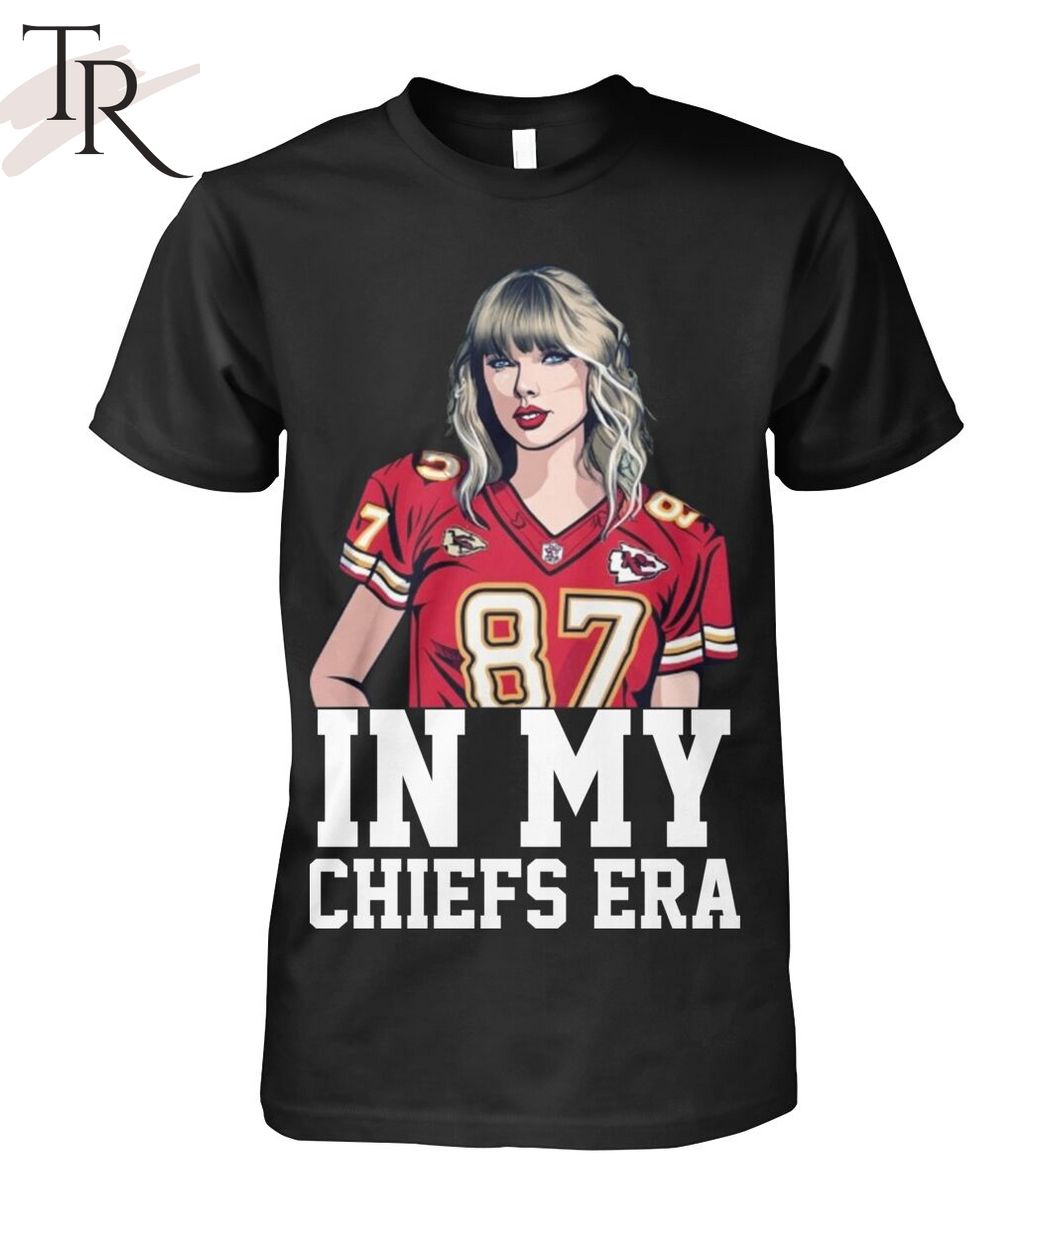 In My Chiefs Era Taylor's Version T-Shirt - Torunstyle